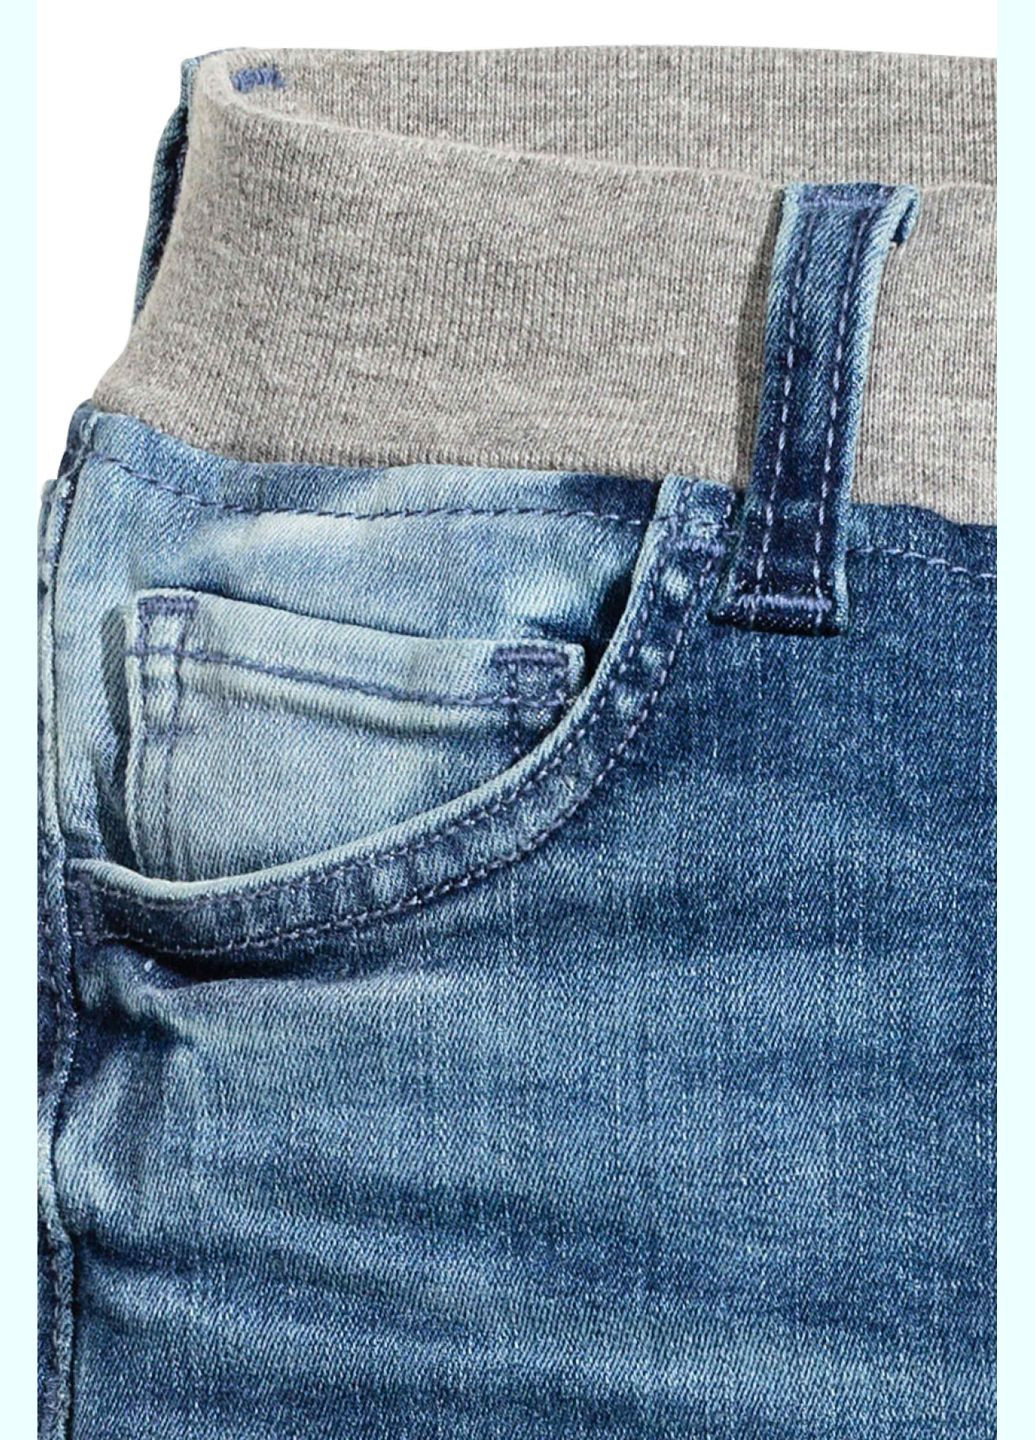 Синие джинсы демисезон,синий-серый, H&M